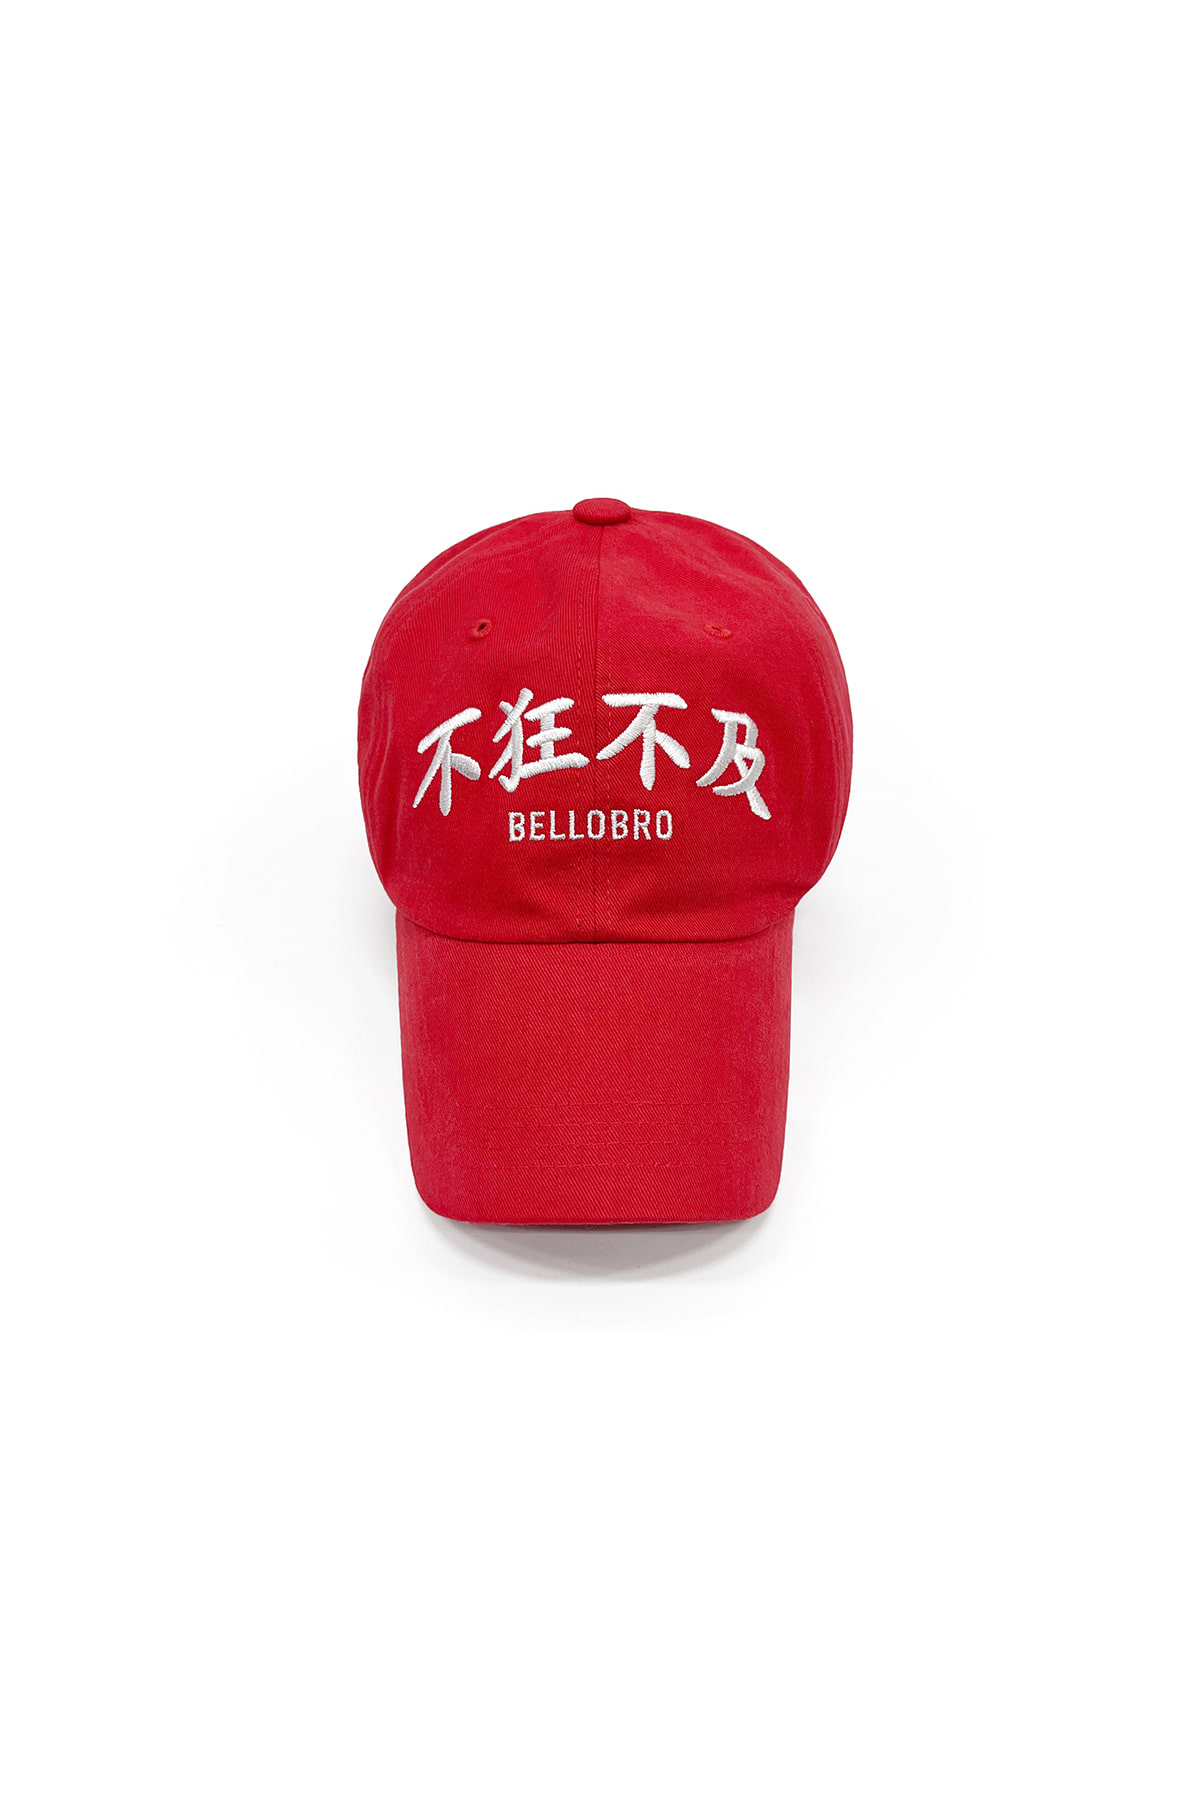 不狂不及 cap (red)